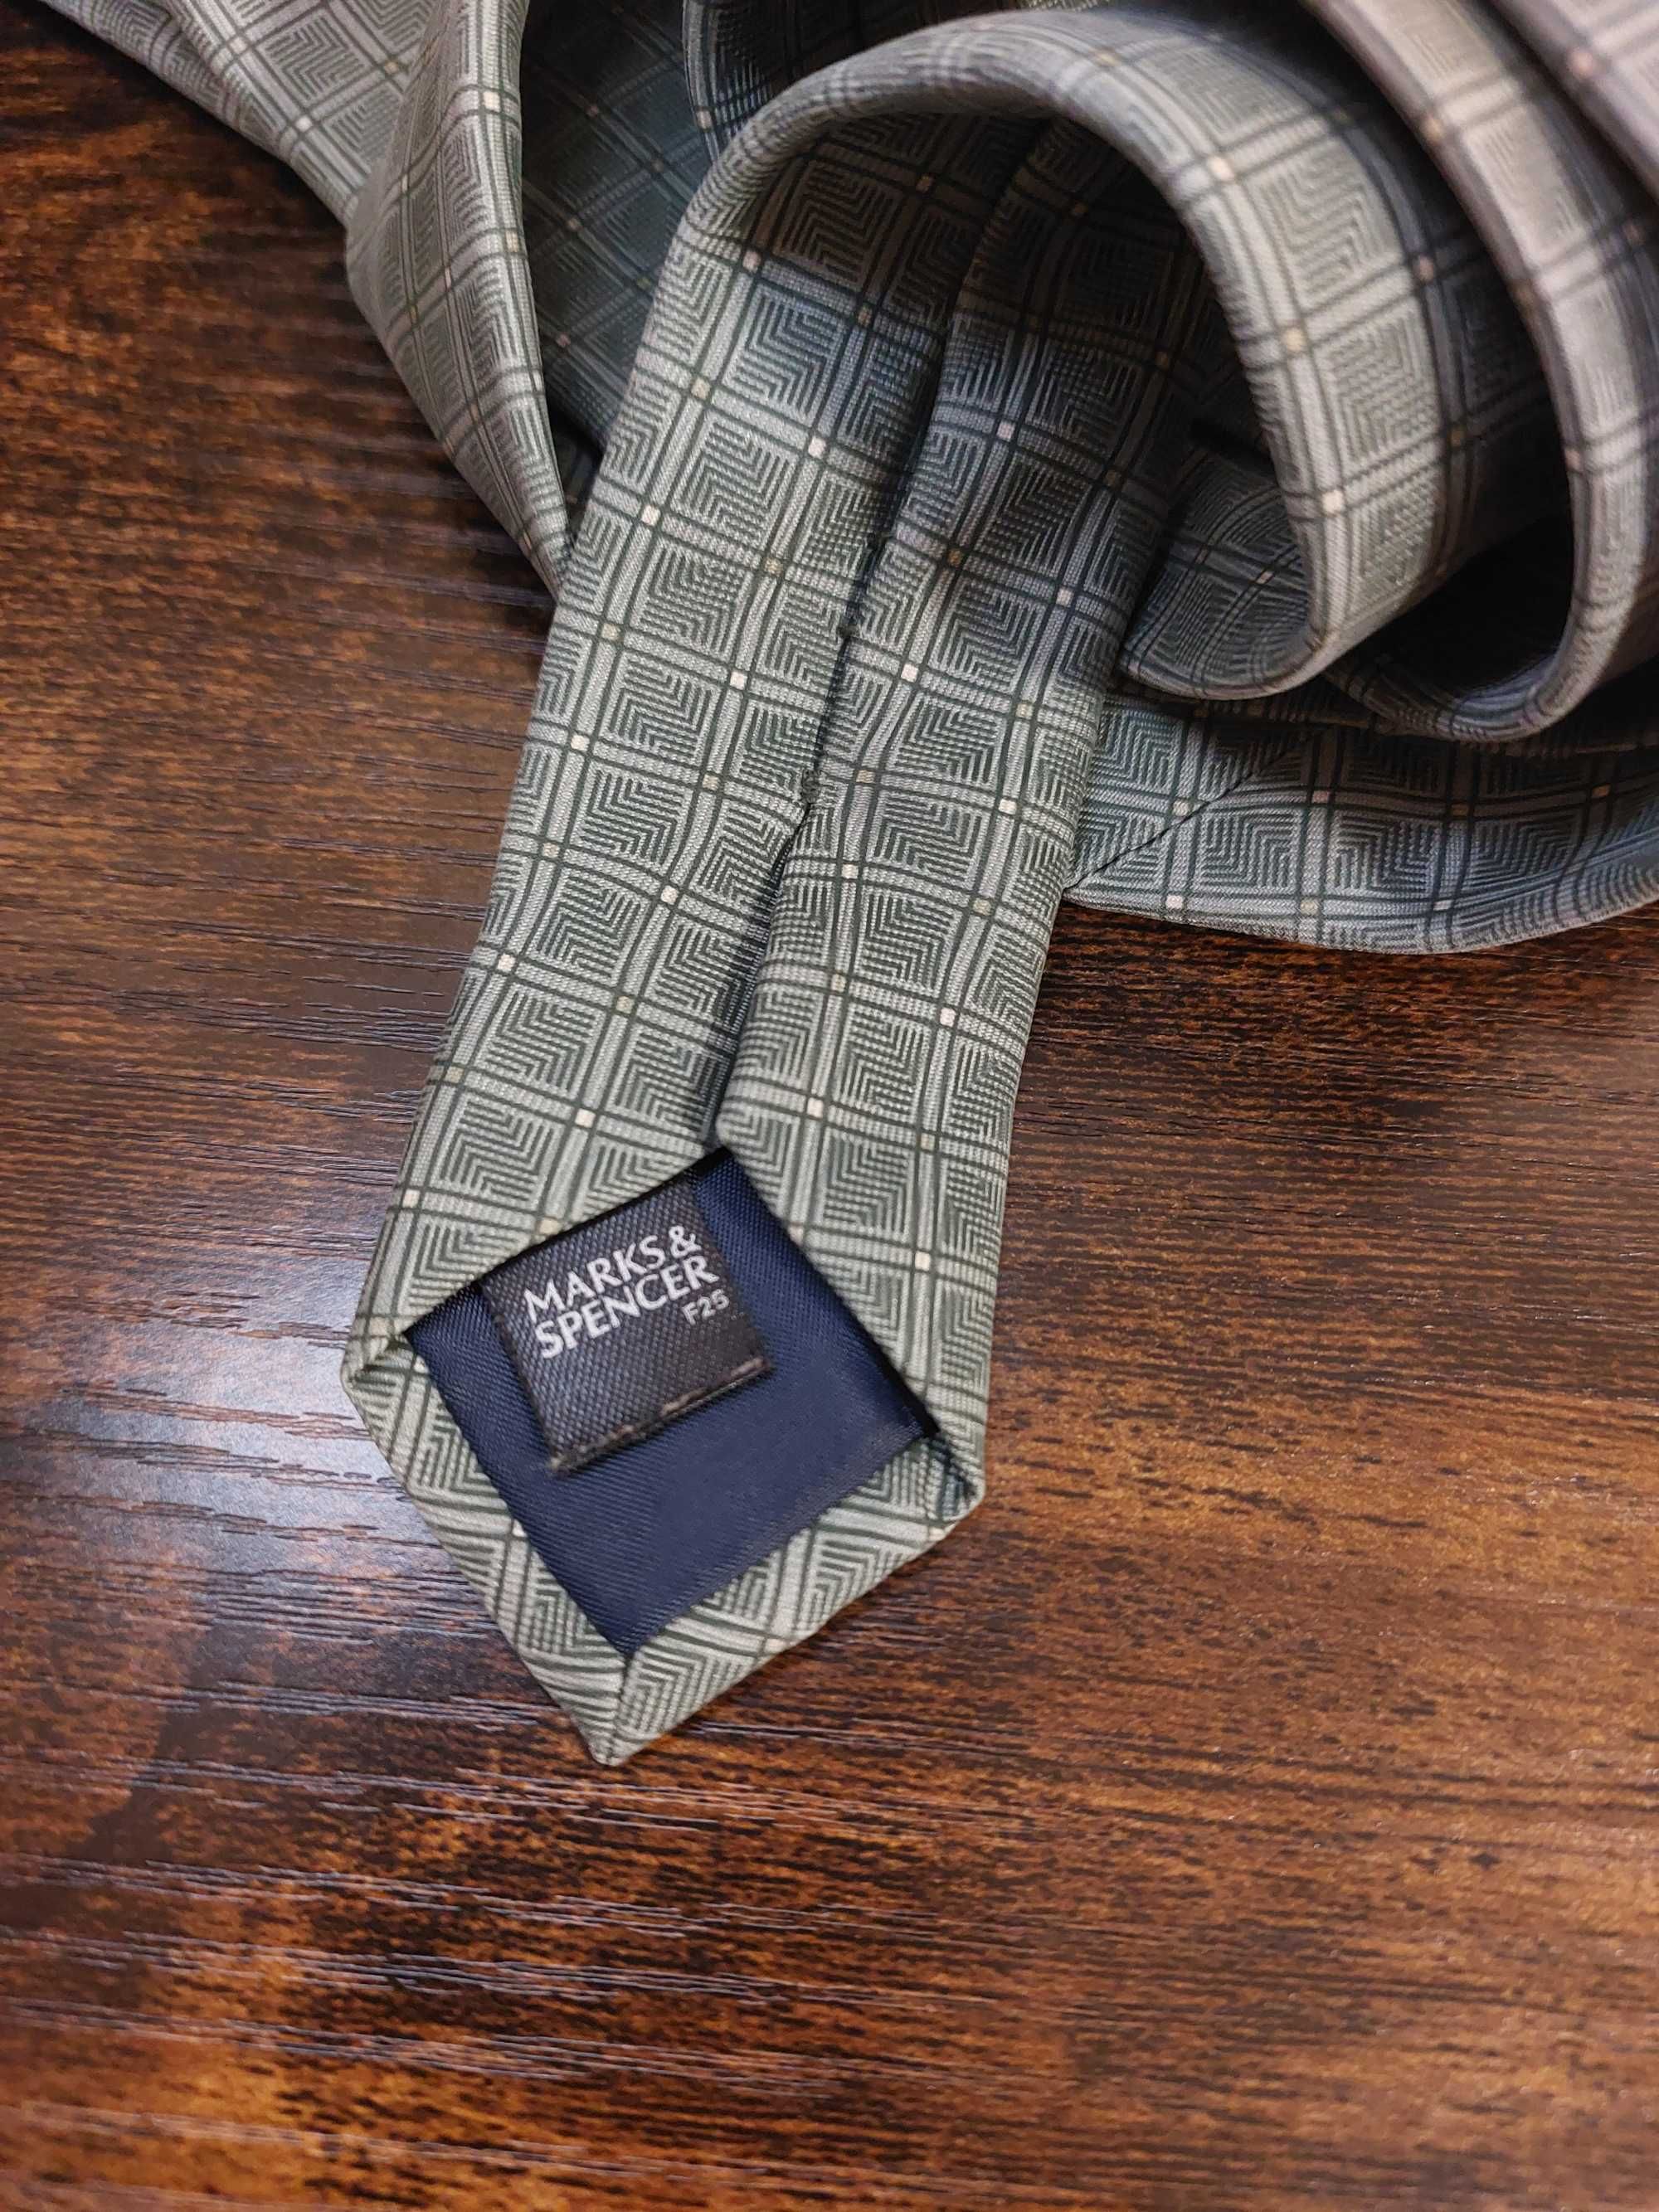 Krawat marki Marks&Spencer 100% jedwab.